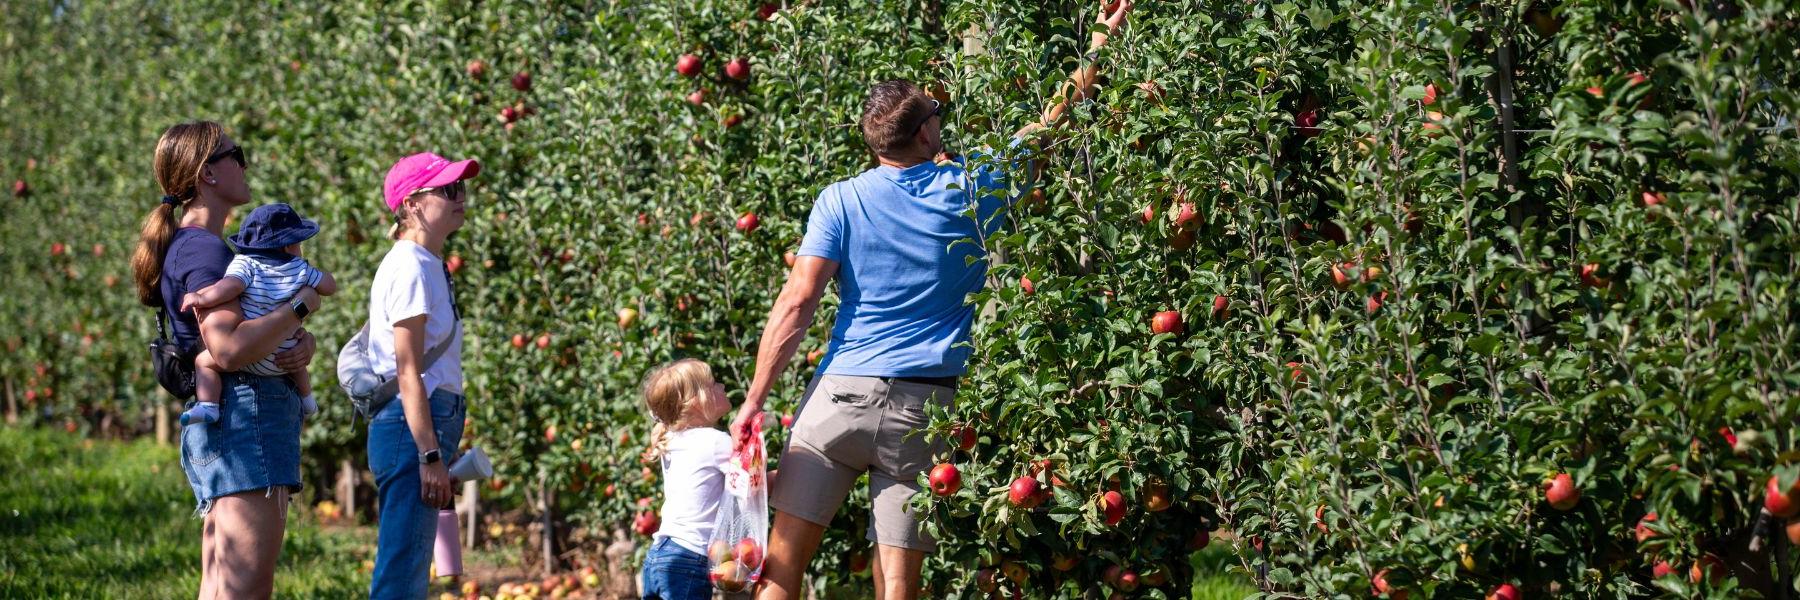 一家人在埃克特农场摘苹果.